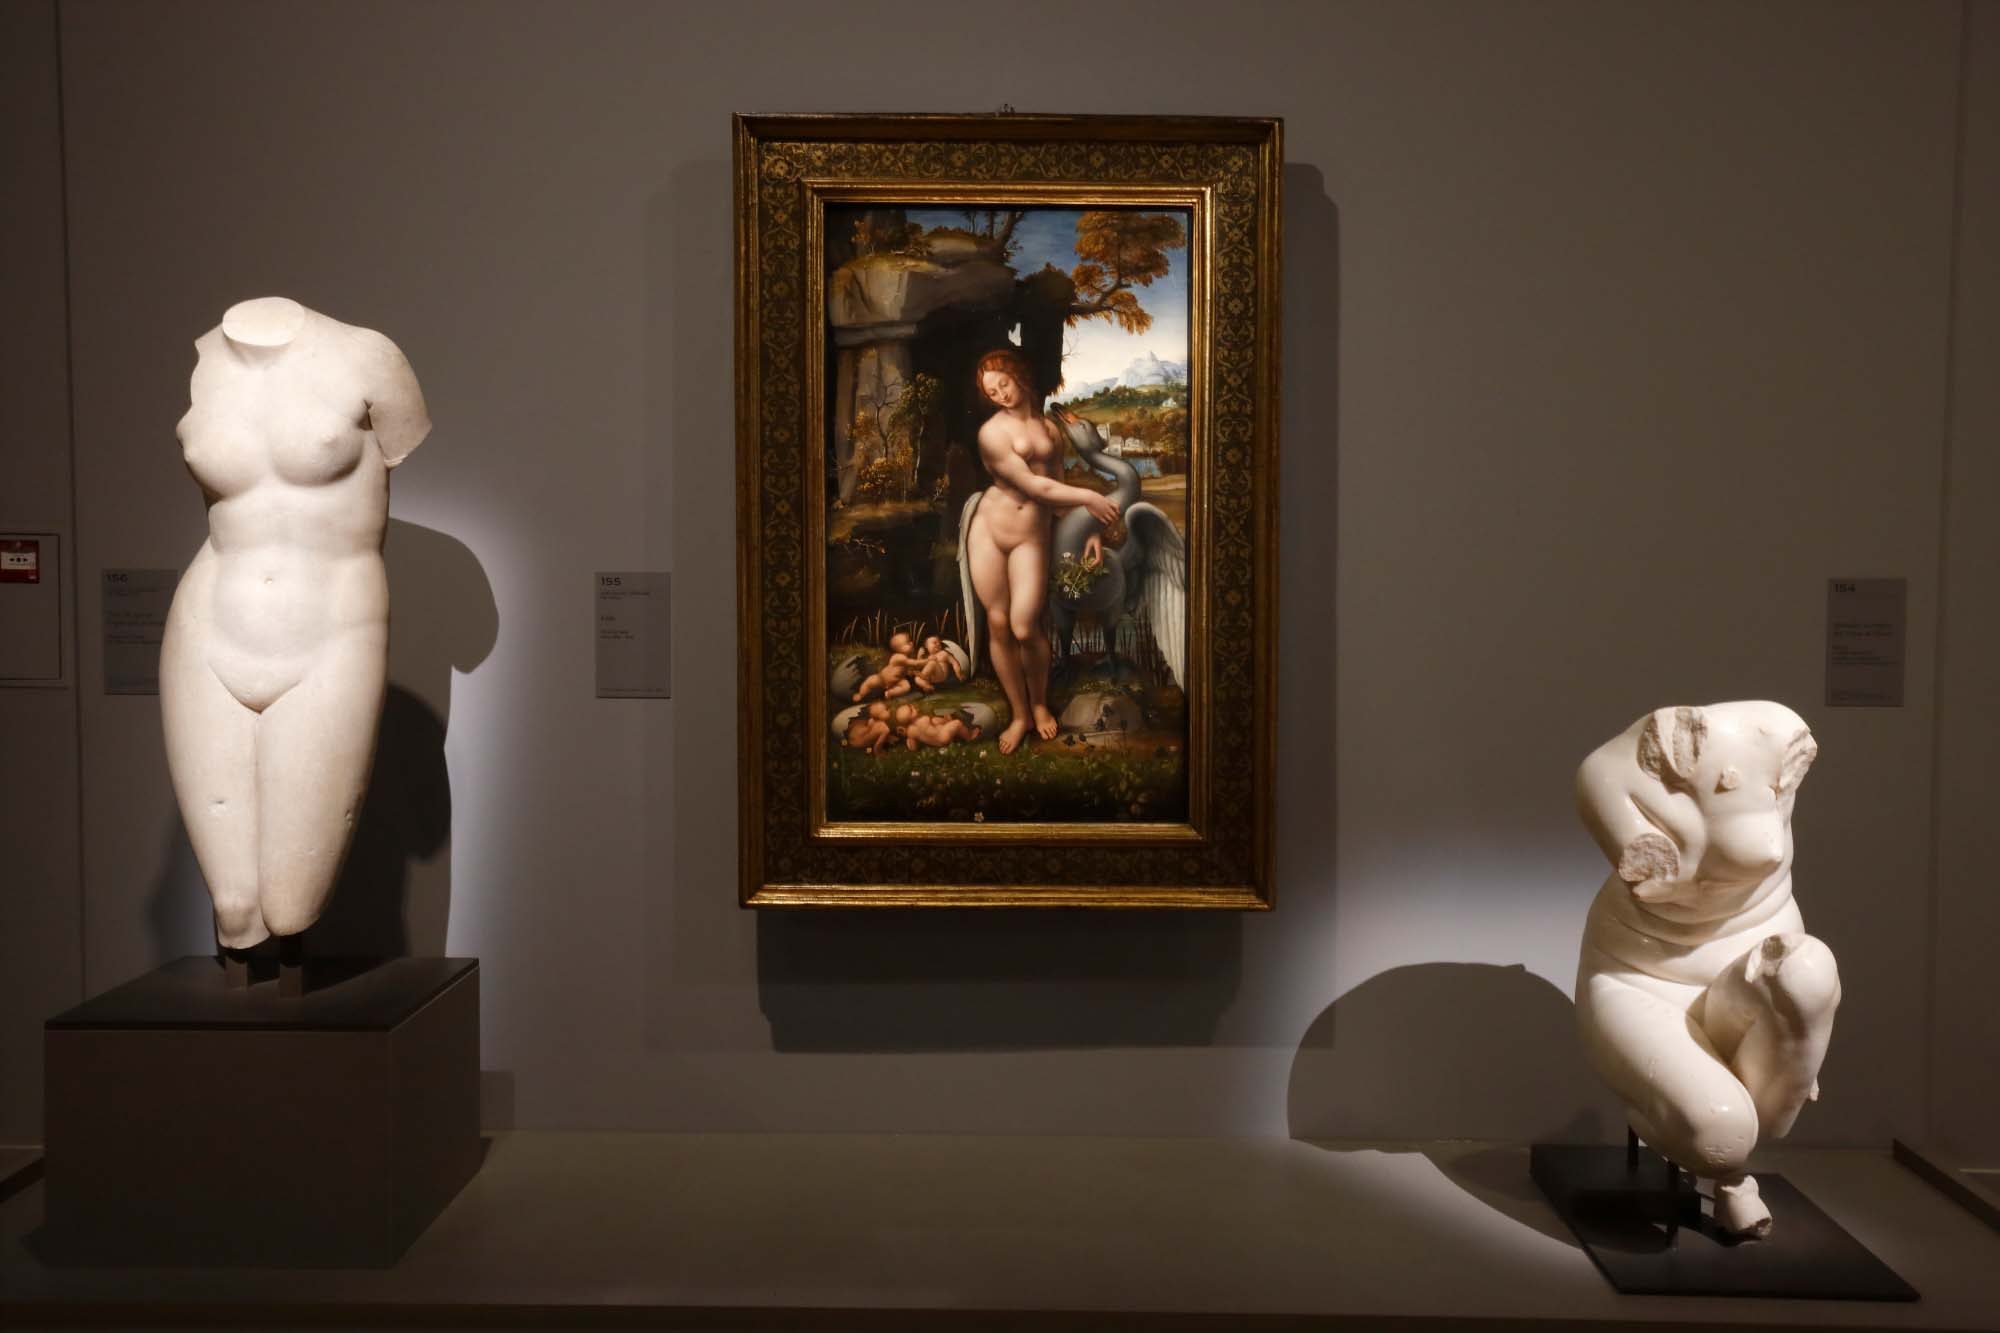 Vue de l'exposition “Leonard de Vinci” au musée du Louvre © Musée du Louvre – Antoine Mongodin